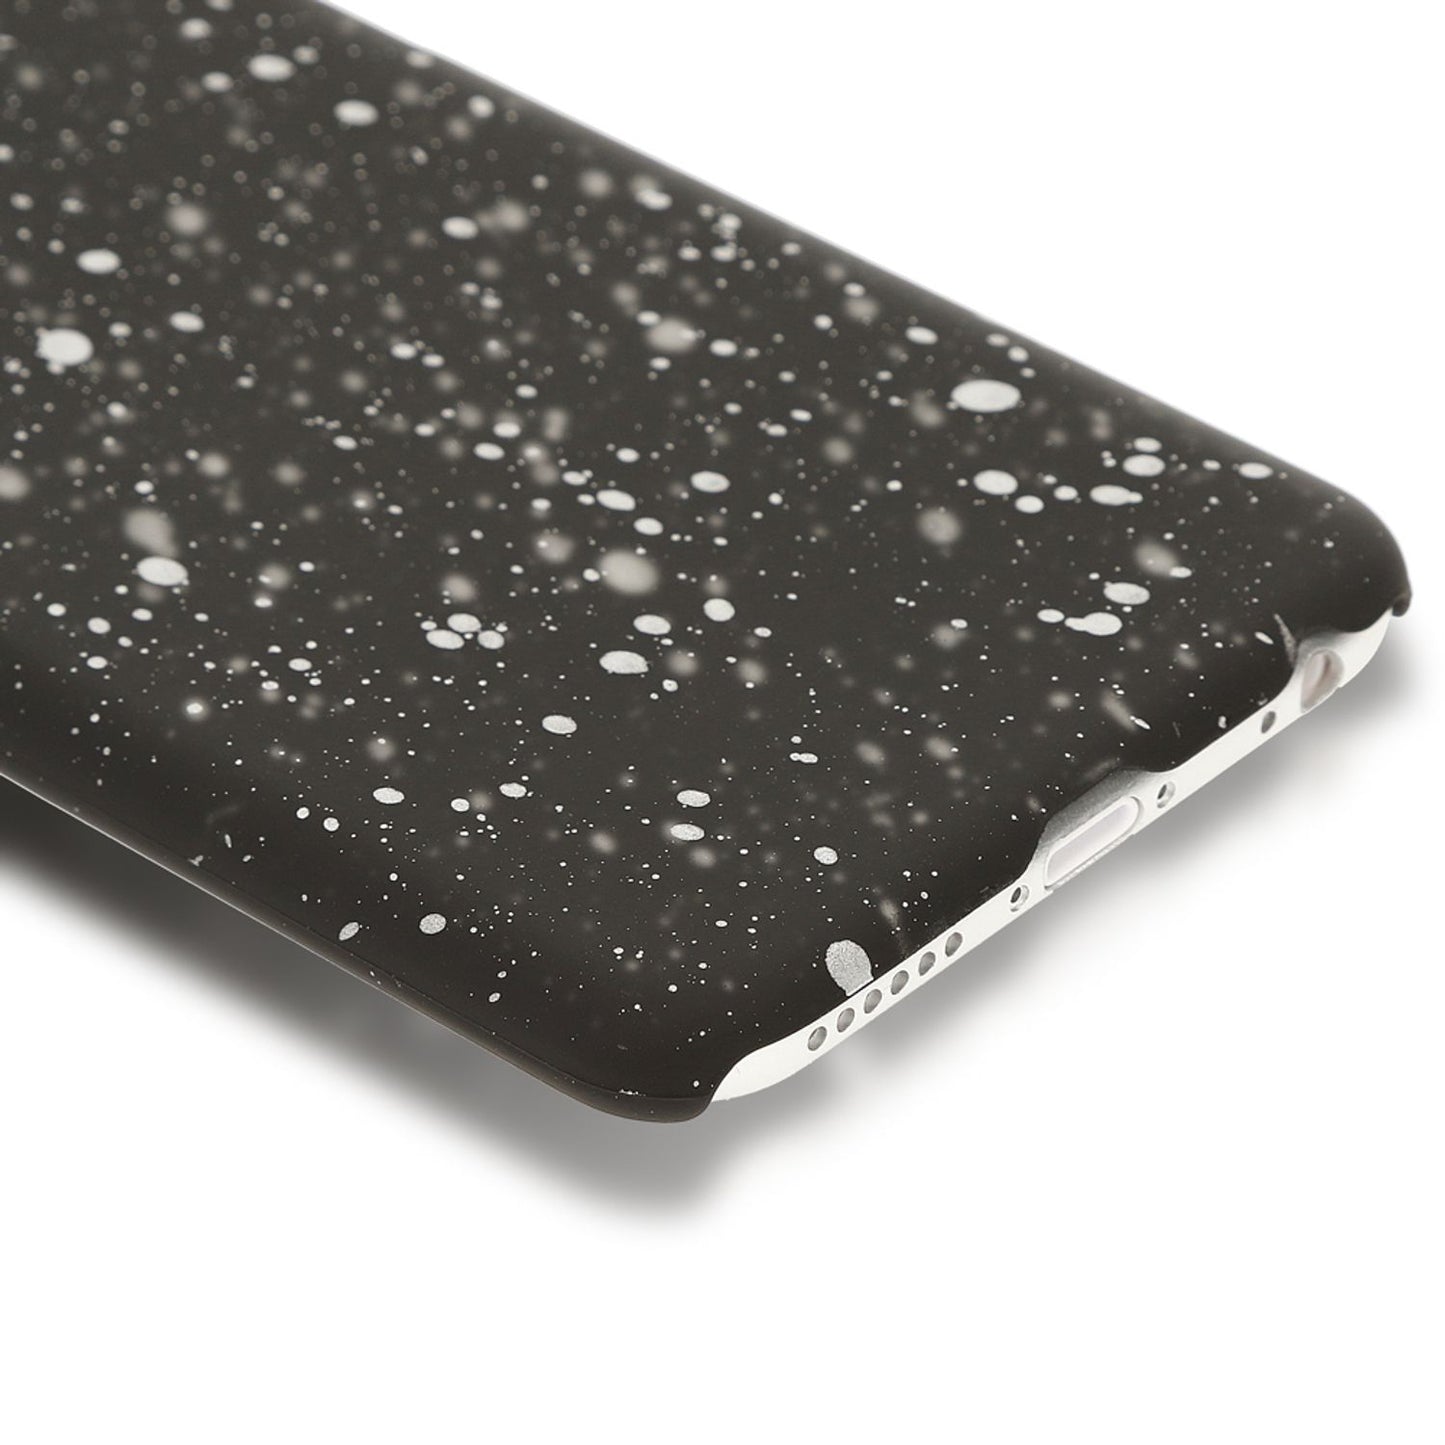 Apple iPhone 6 6S Sternenhimmel Handy Hülle von NALIA 3D Galaxy Cover Case Schutz